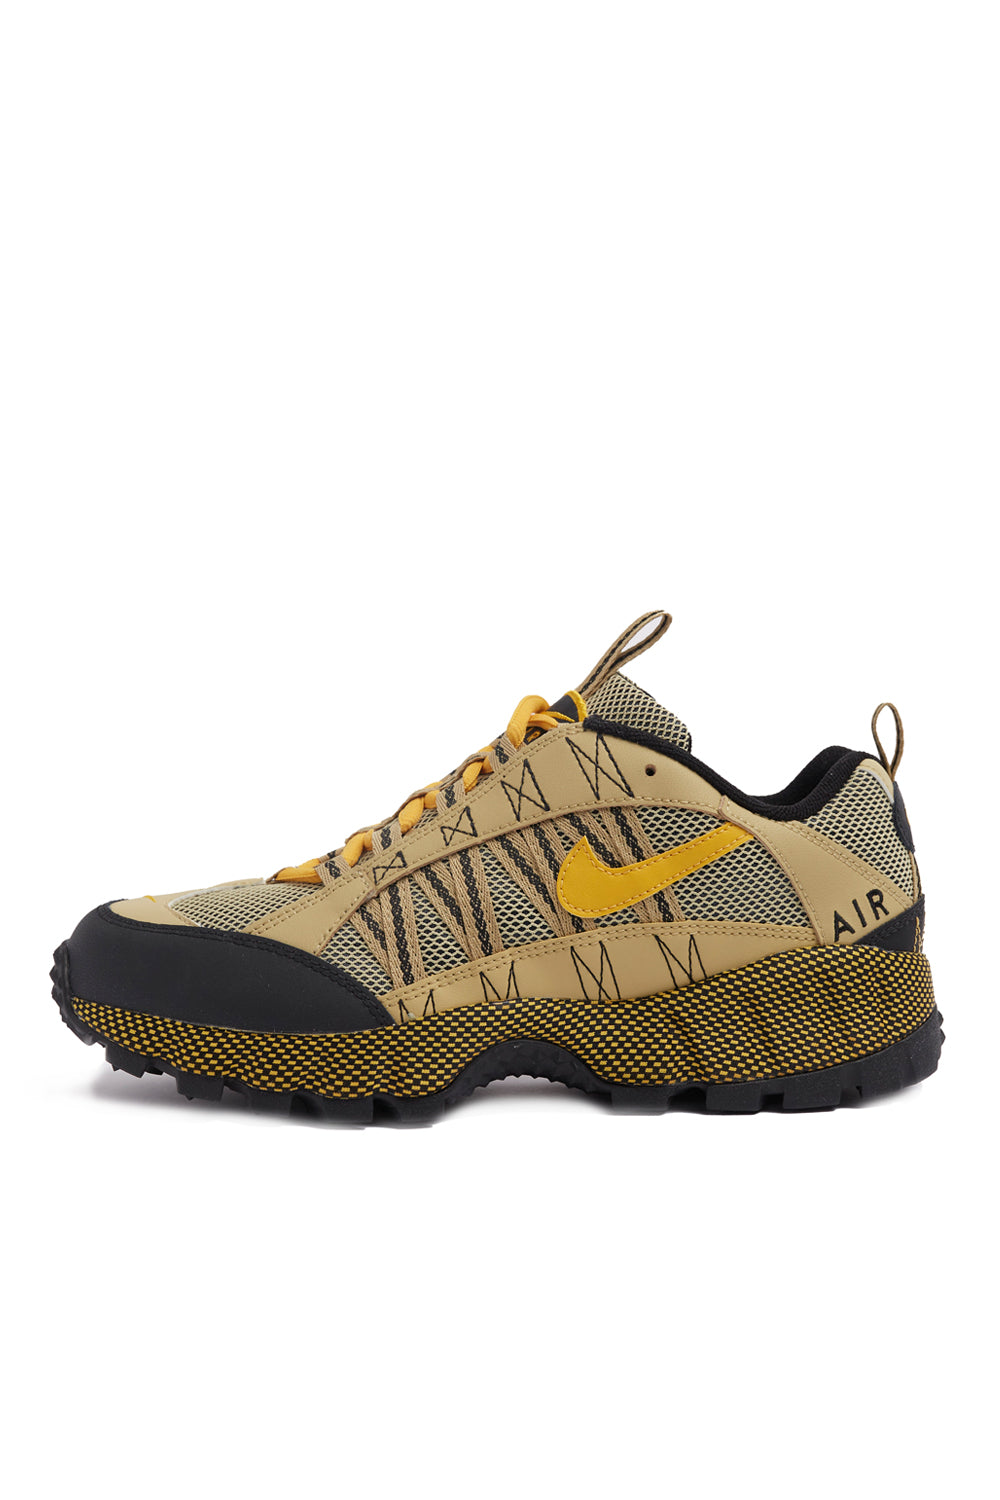 Nike Humara 'Wheat Grass/Yellow Ochre' |